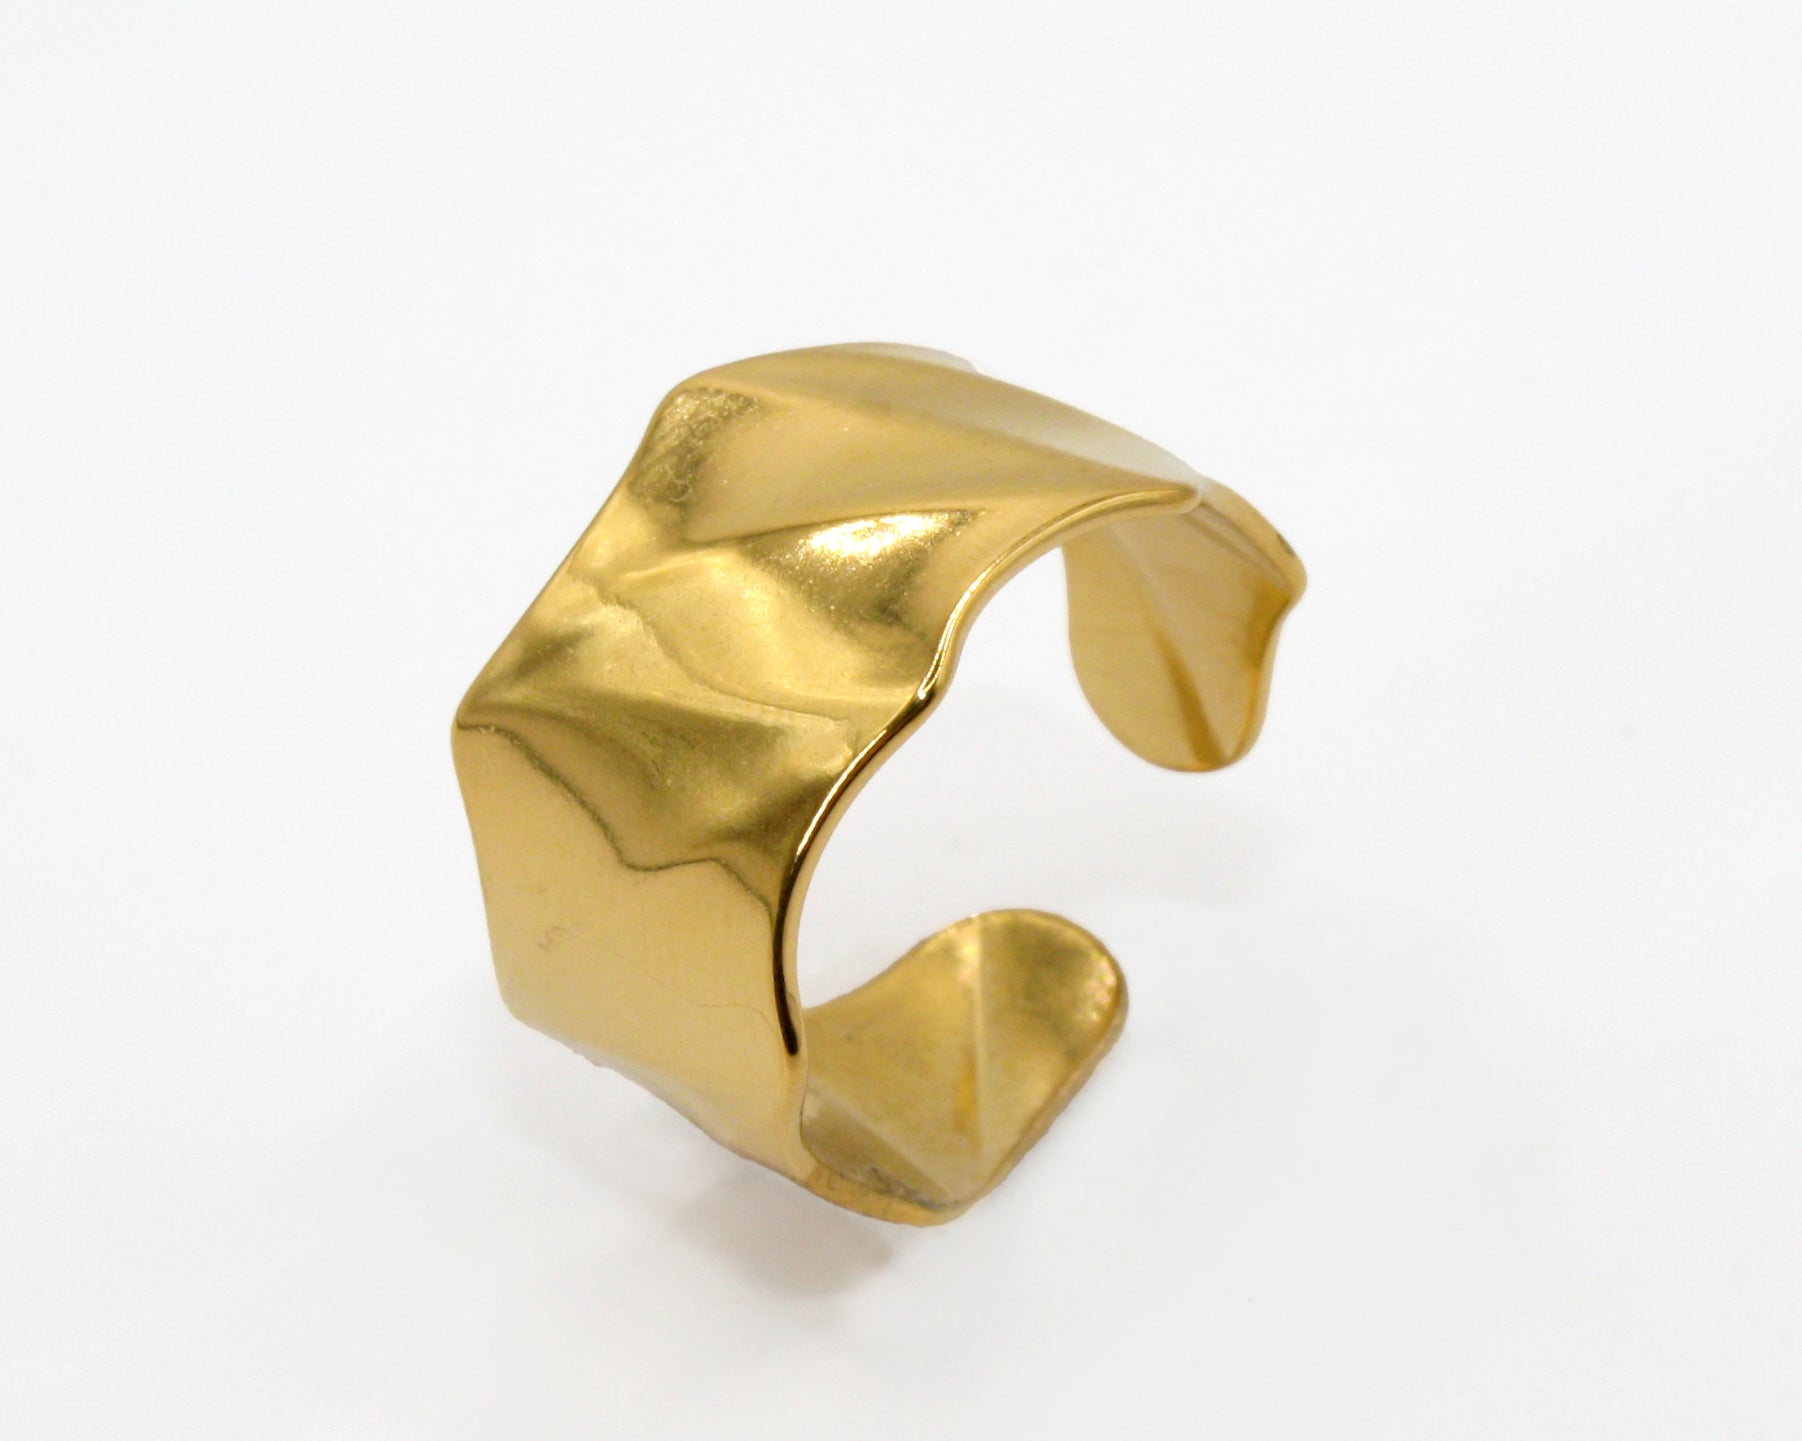 Colección Bold gold | Anillo Waves de acero inoxidable bañado en oro 14k. Marca Vesiica.